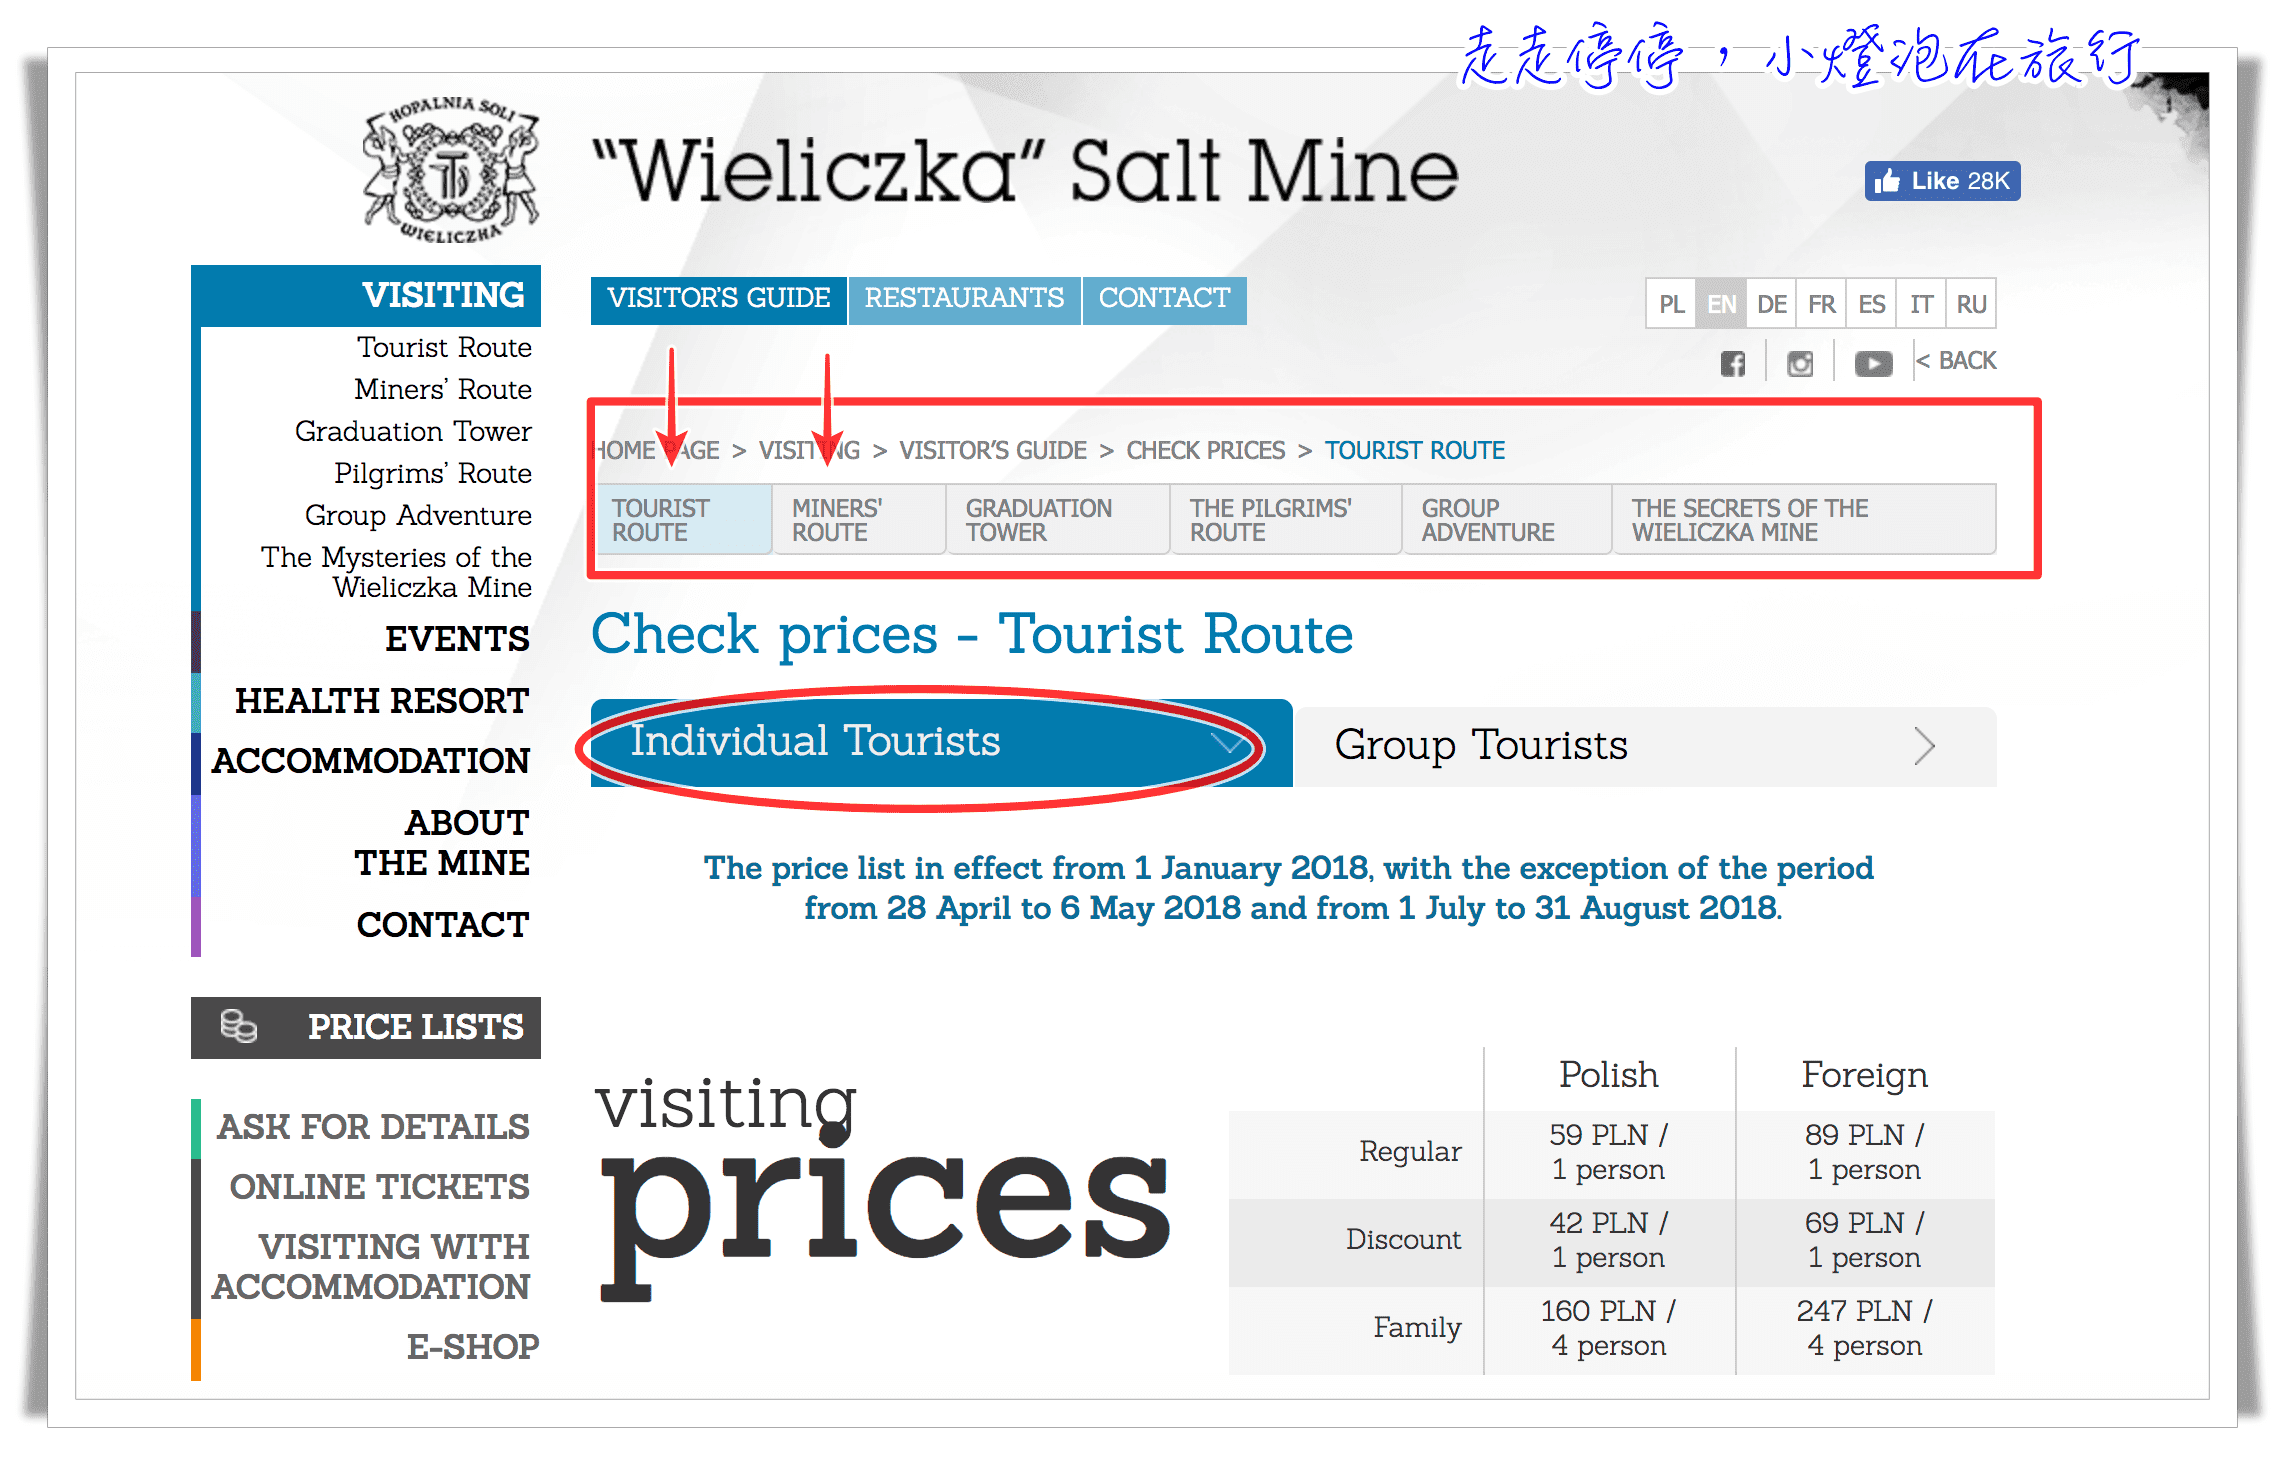 波蘭克拉科夫景點｜維利奇卡鹽礦Wieliczka Salt Mine  Miners’ Route 網路預約訂票教學